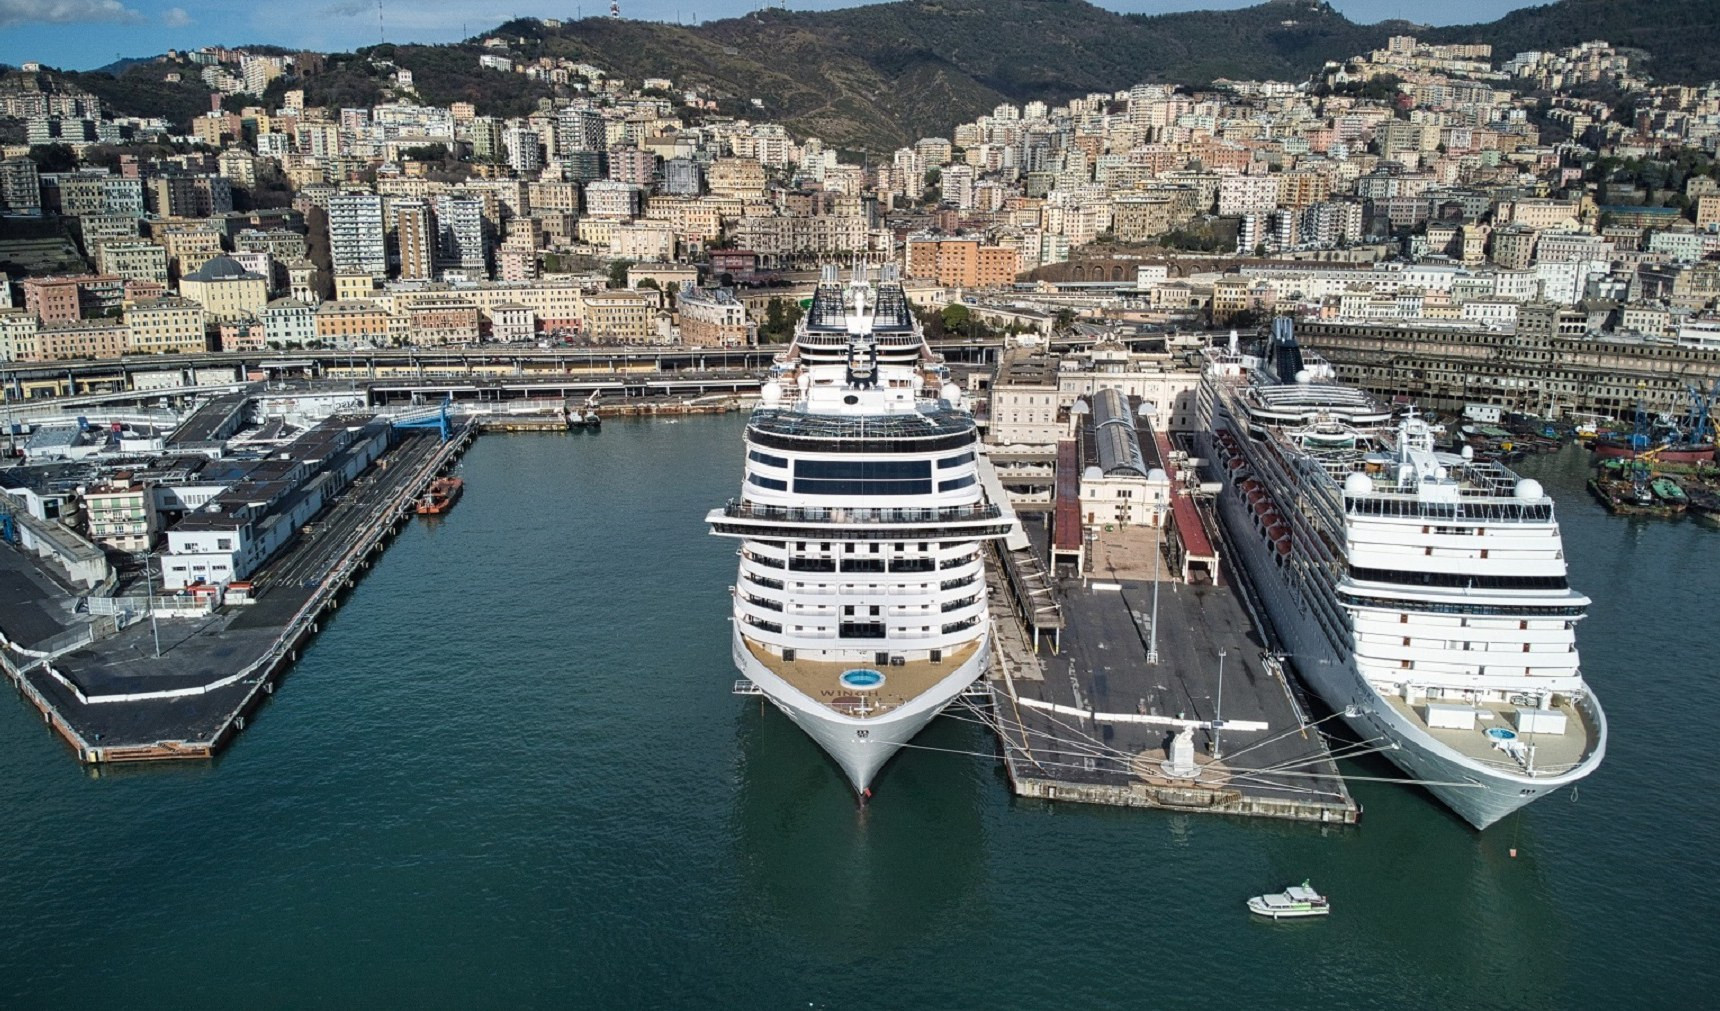  116 notti, 50 destinazioni e 21 paesi: da Genova la world cruise 2025 di Msc Crociere